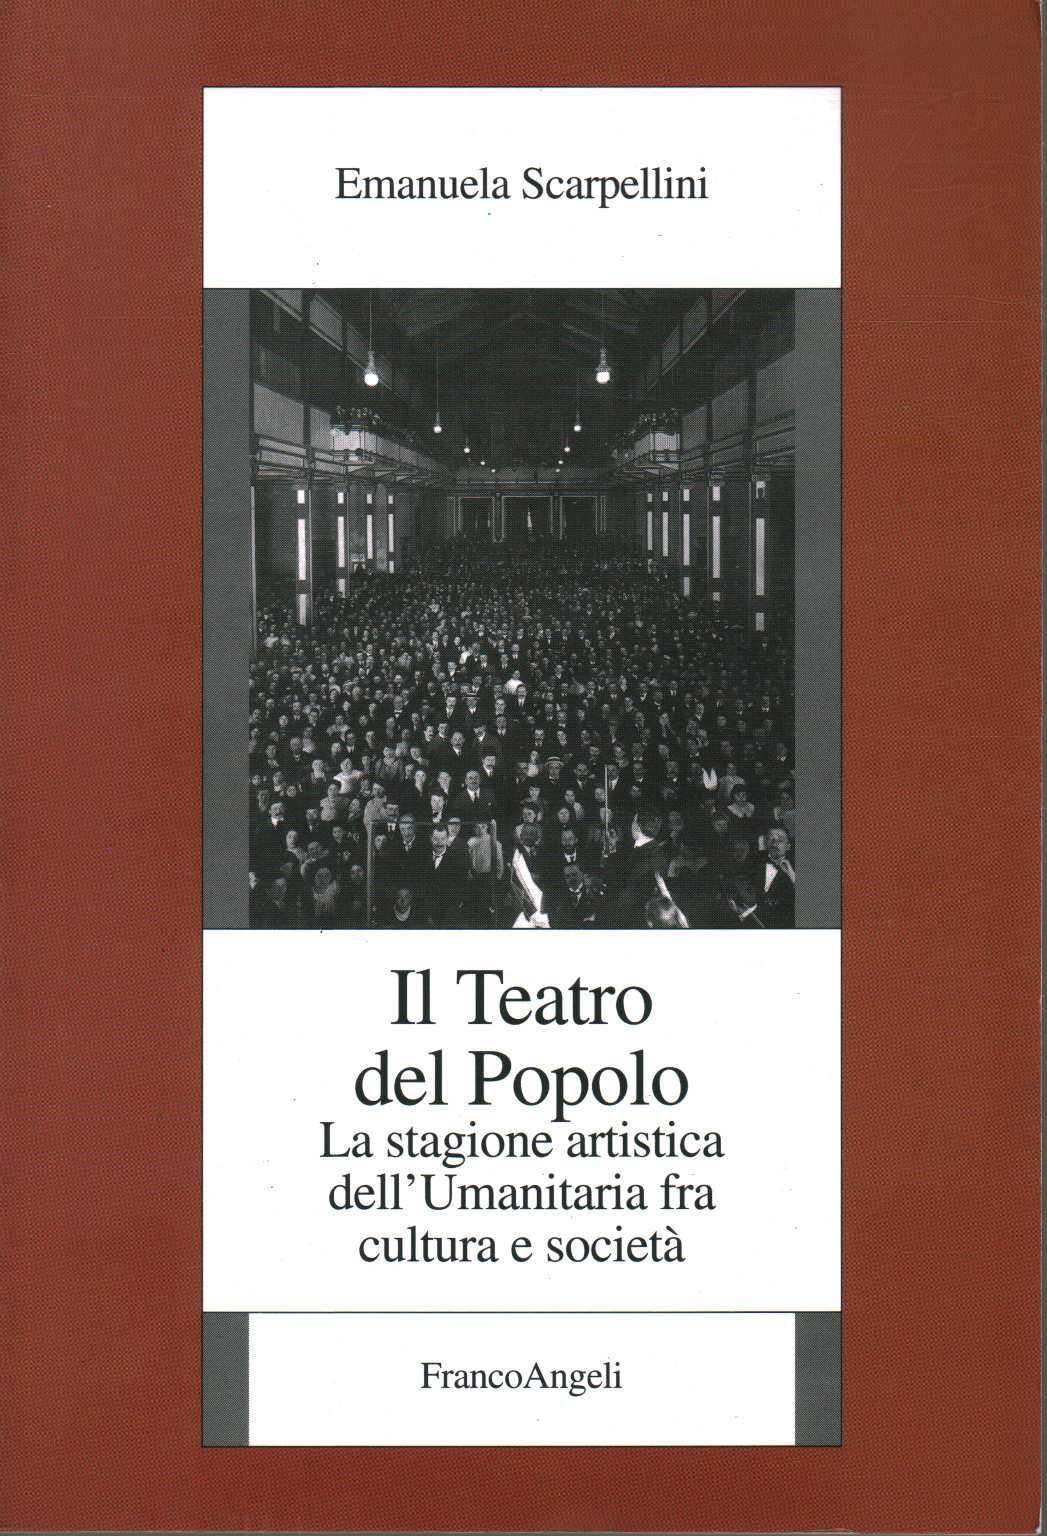 Il Teatro del Popolo, s.a.